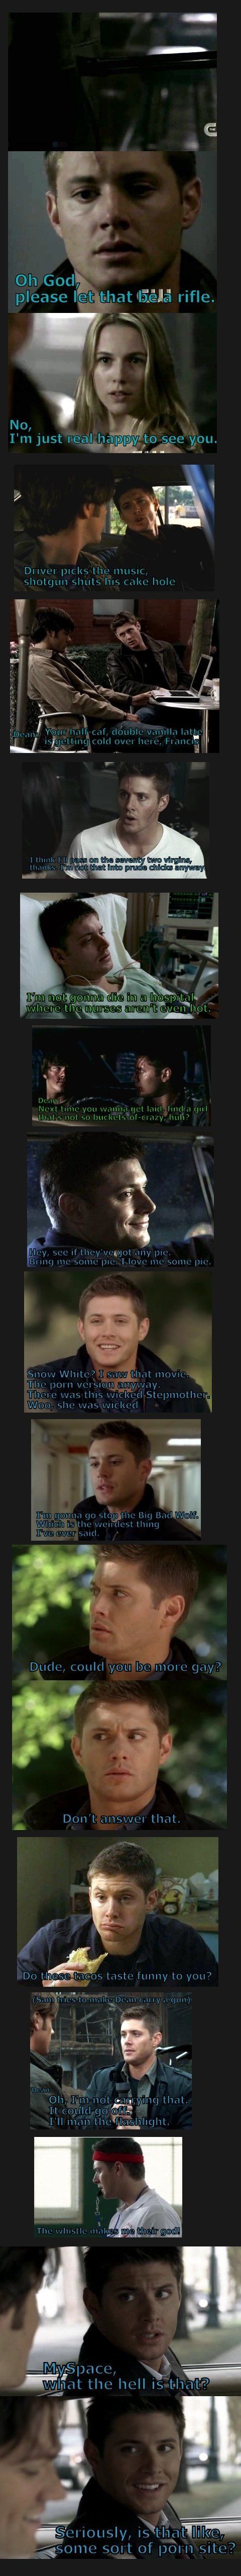 Dean-isms.